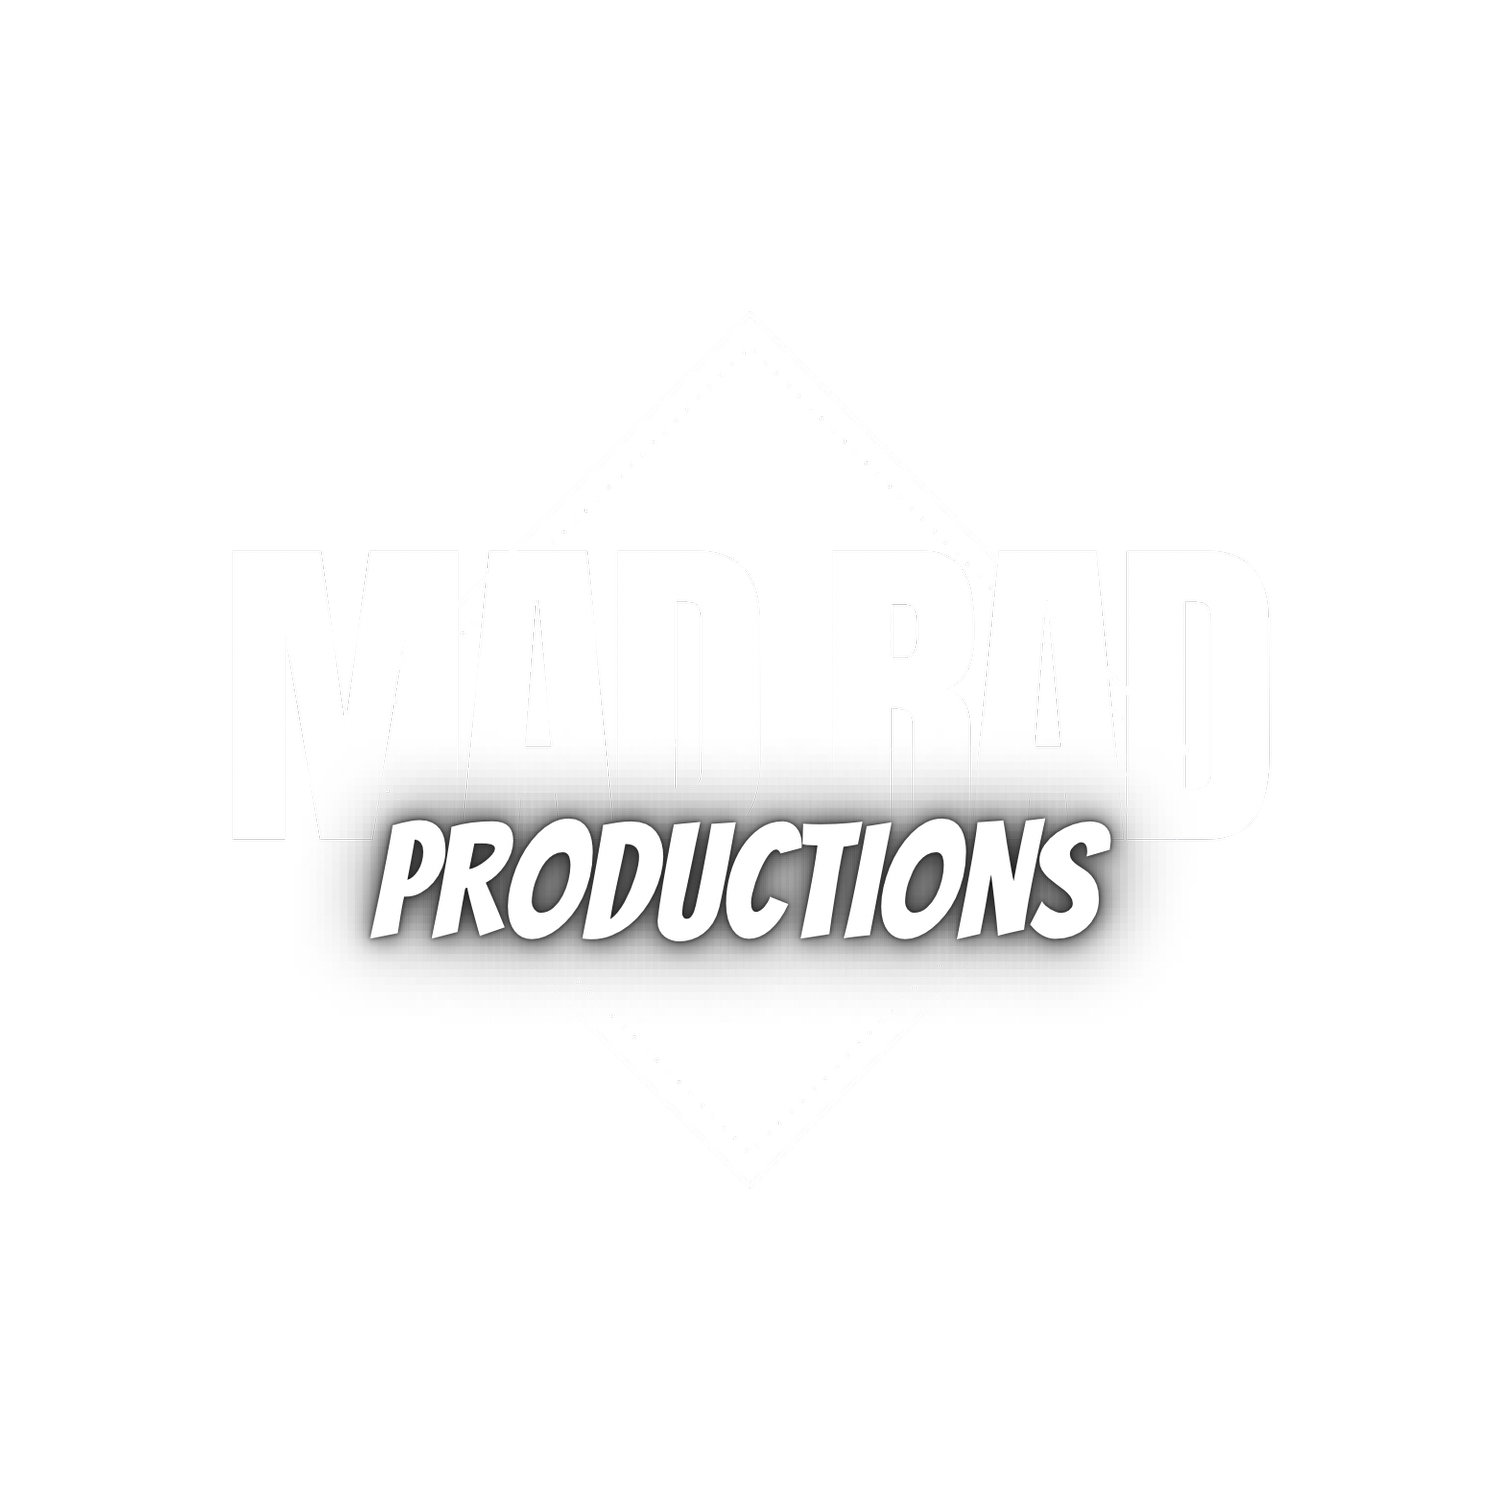 MAD RAD PRODUCTIONS